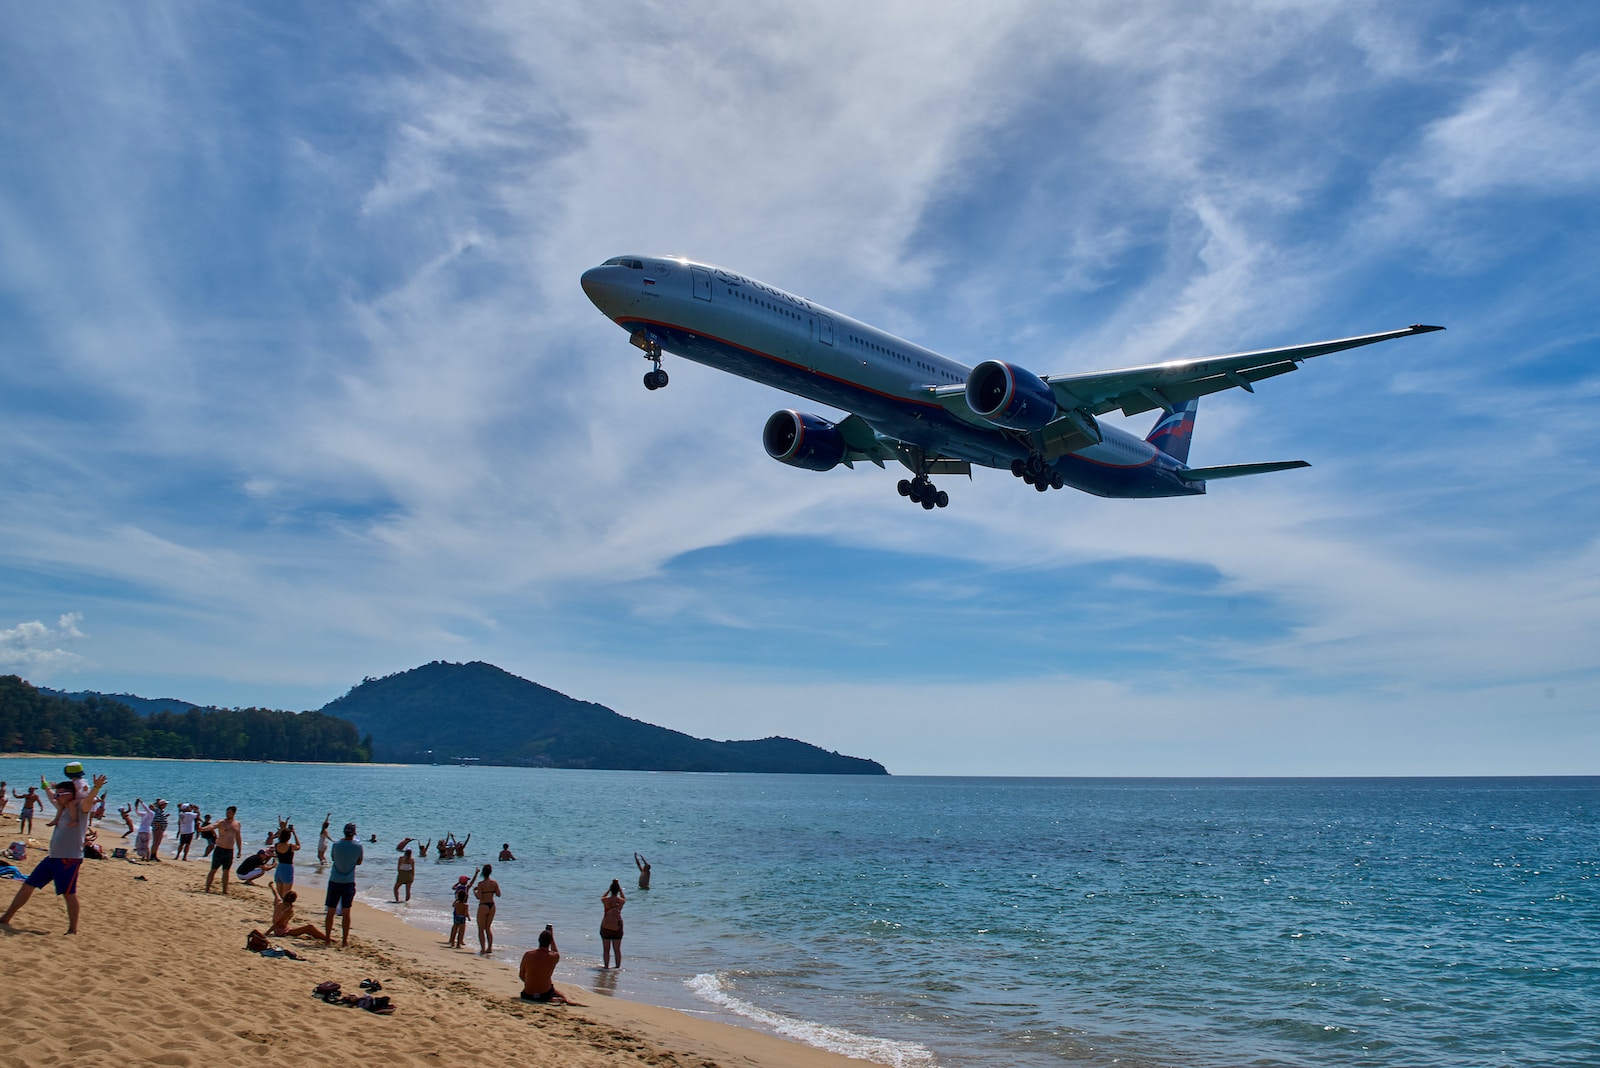 Een toeristische attractie - op Phuket landen de grote passagiersvliegtuigen slechts een paar meter boven het strand.